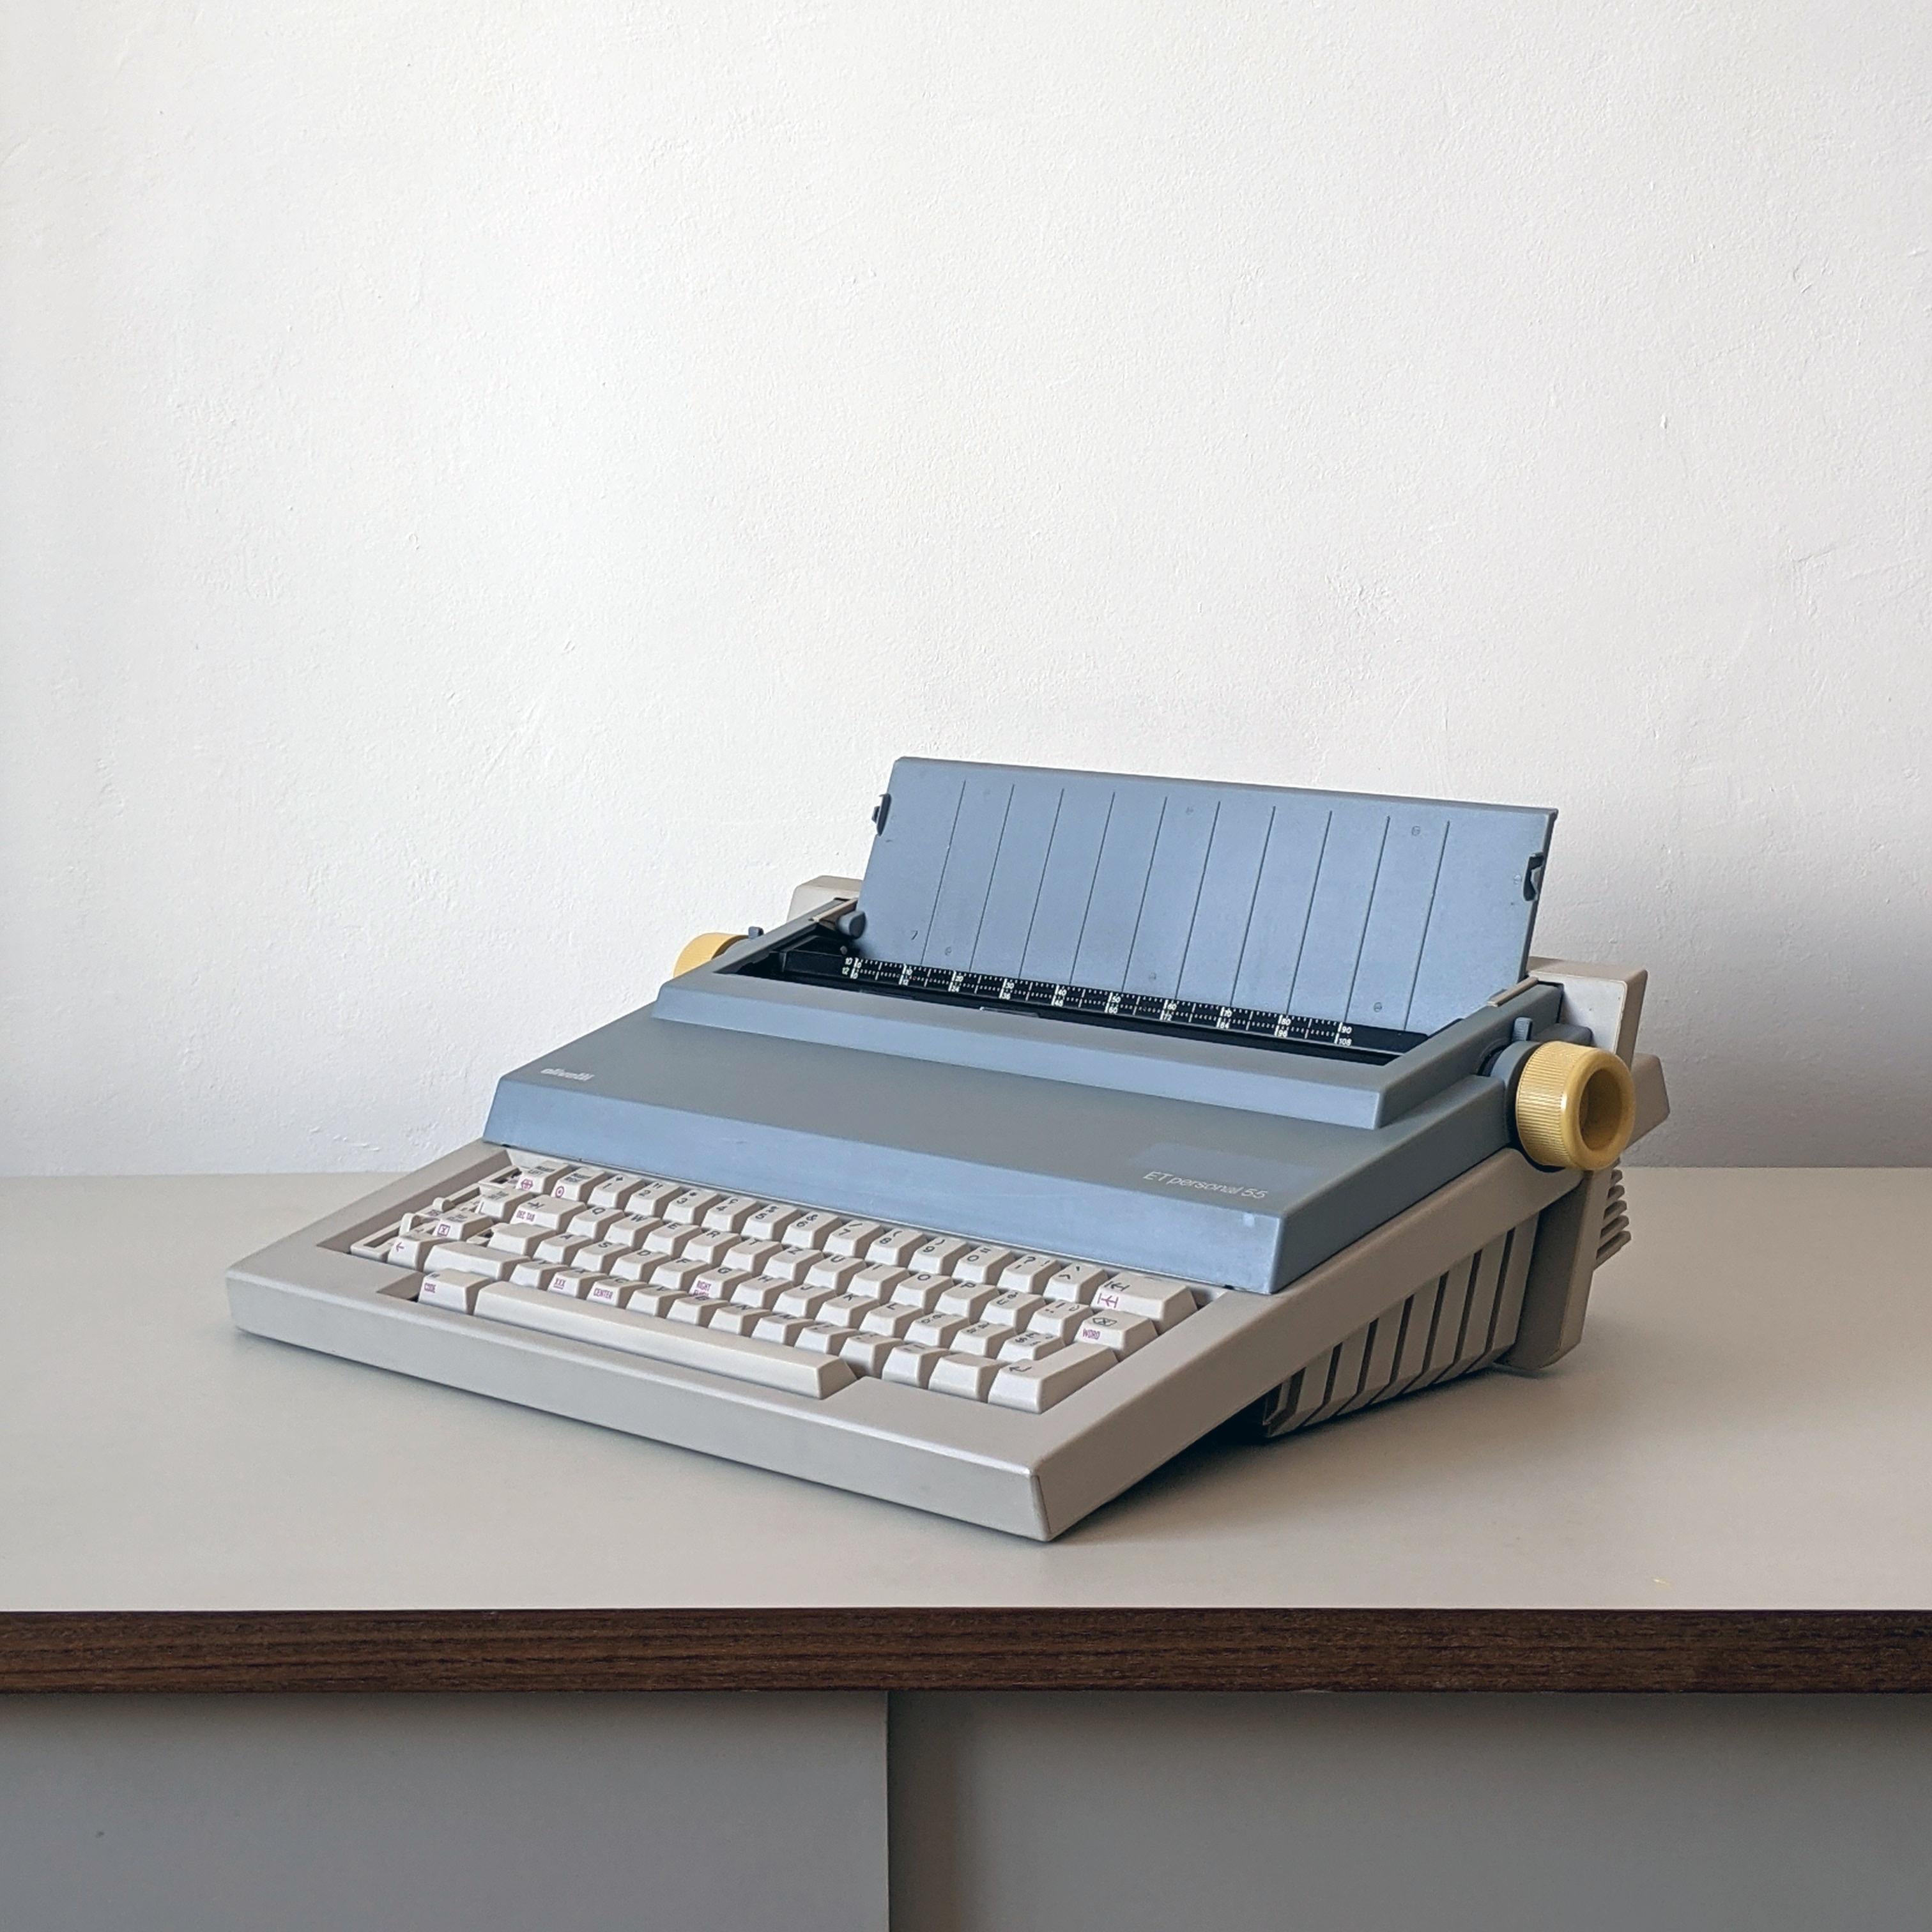 Mario Bellini (Designer), Italien
Olivetti (Hersteller), Italien
ET Personal tragbare (elektrische) Schreibmaschine, entworfen 1985-86

Geformter ABS-Kunststoff (und andere Kunststoffe und Metalle). Komplett mit Gehäuseteilen und